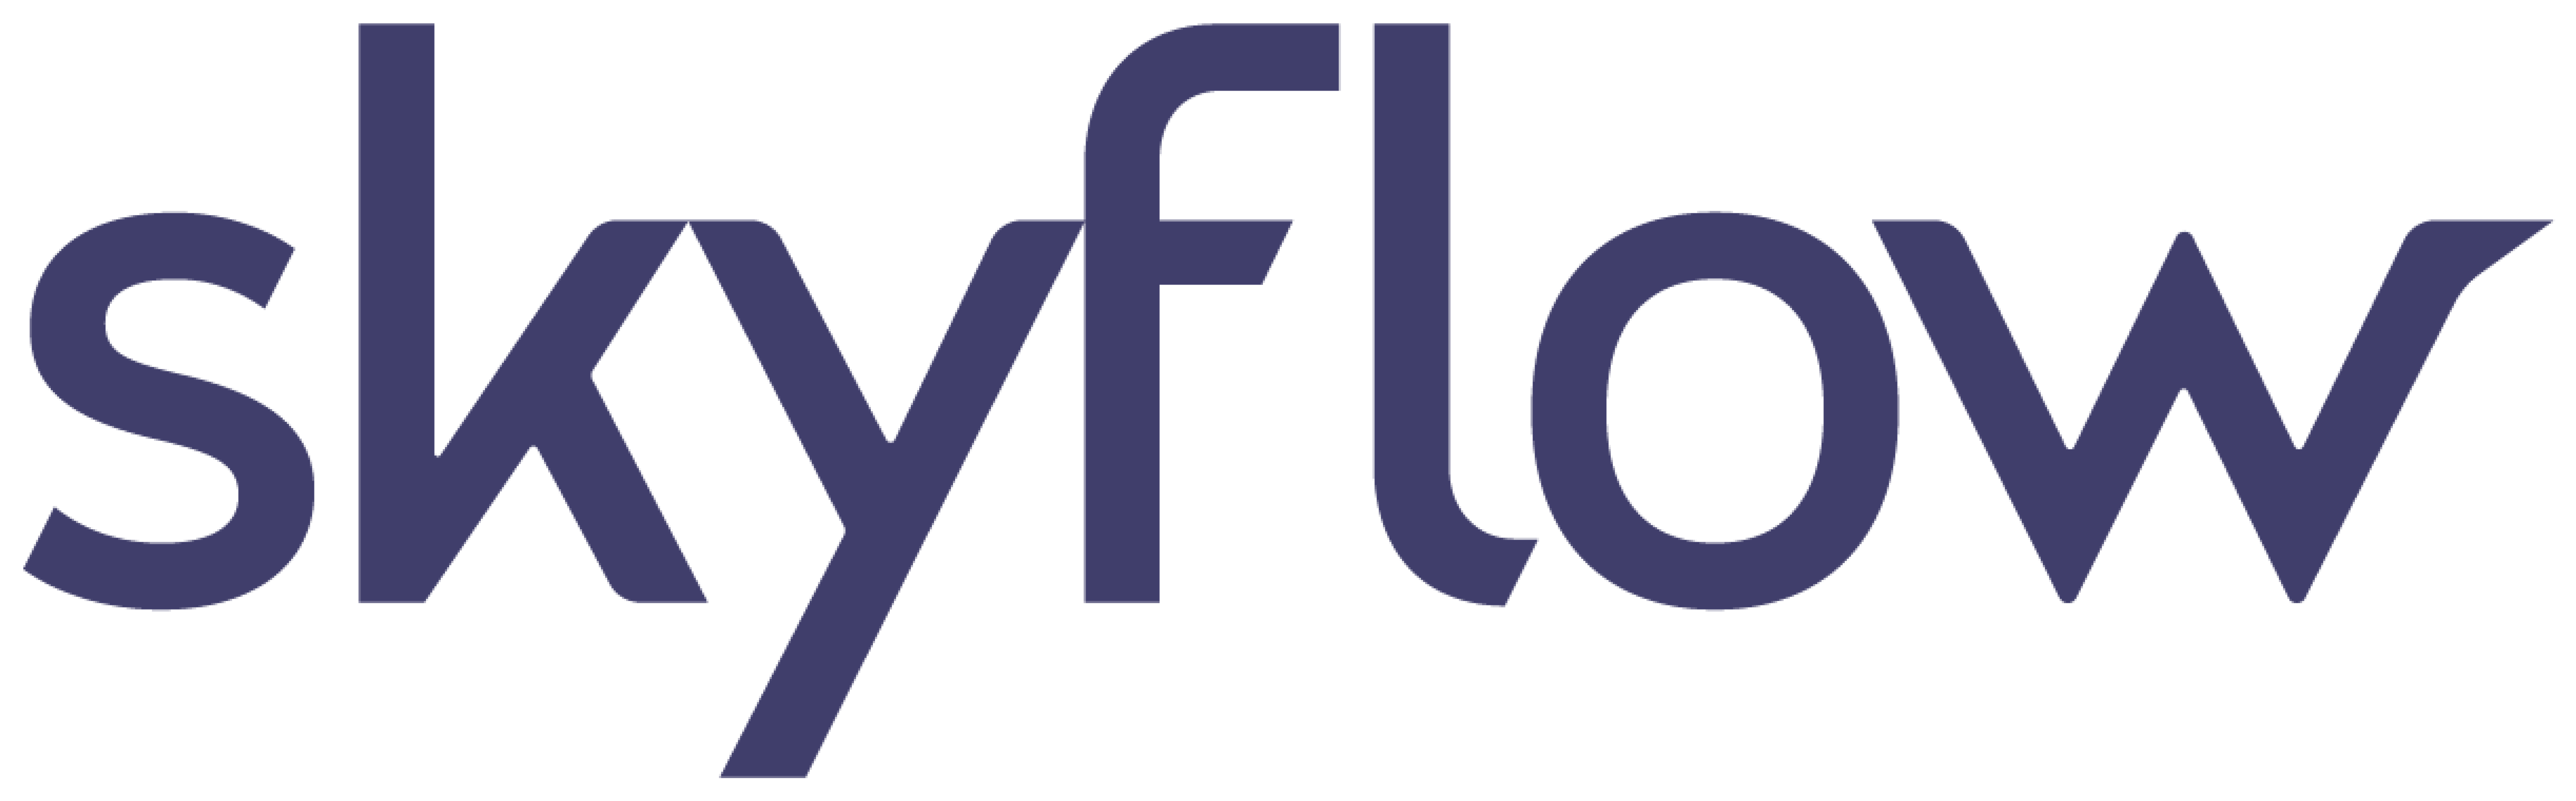 Skyflow logo